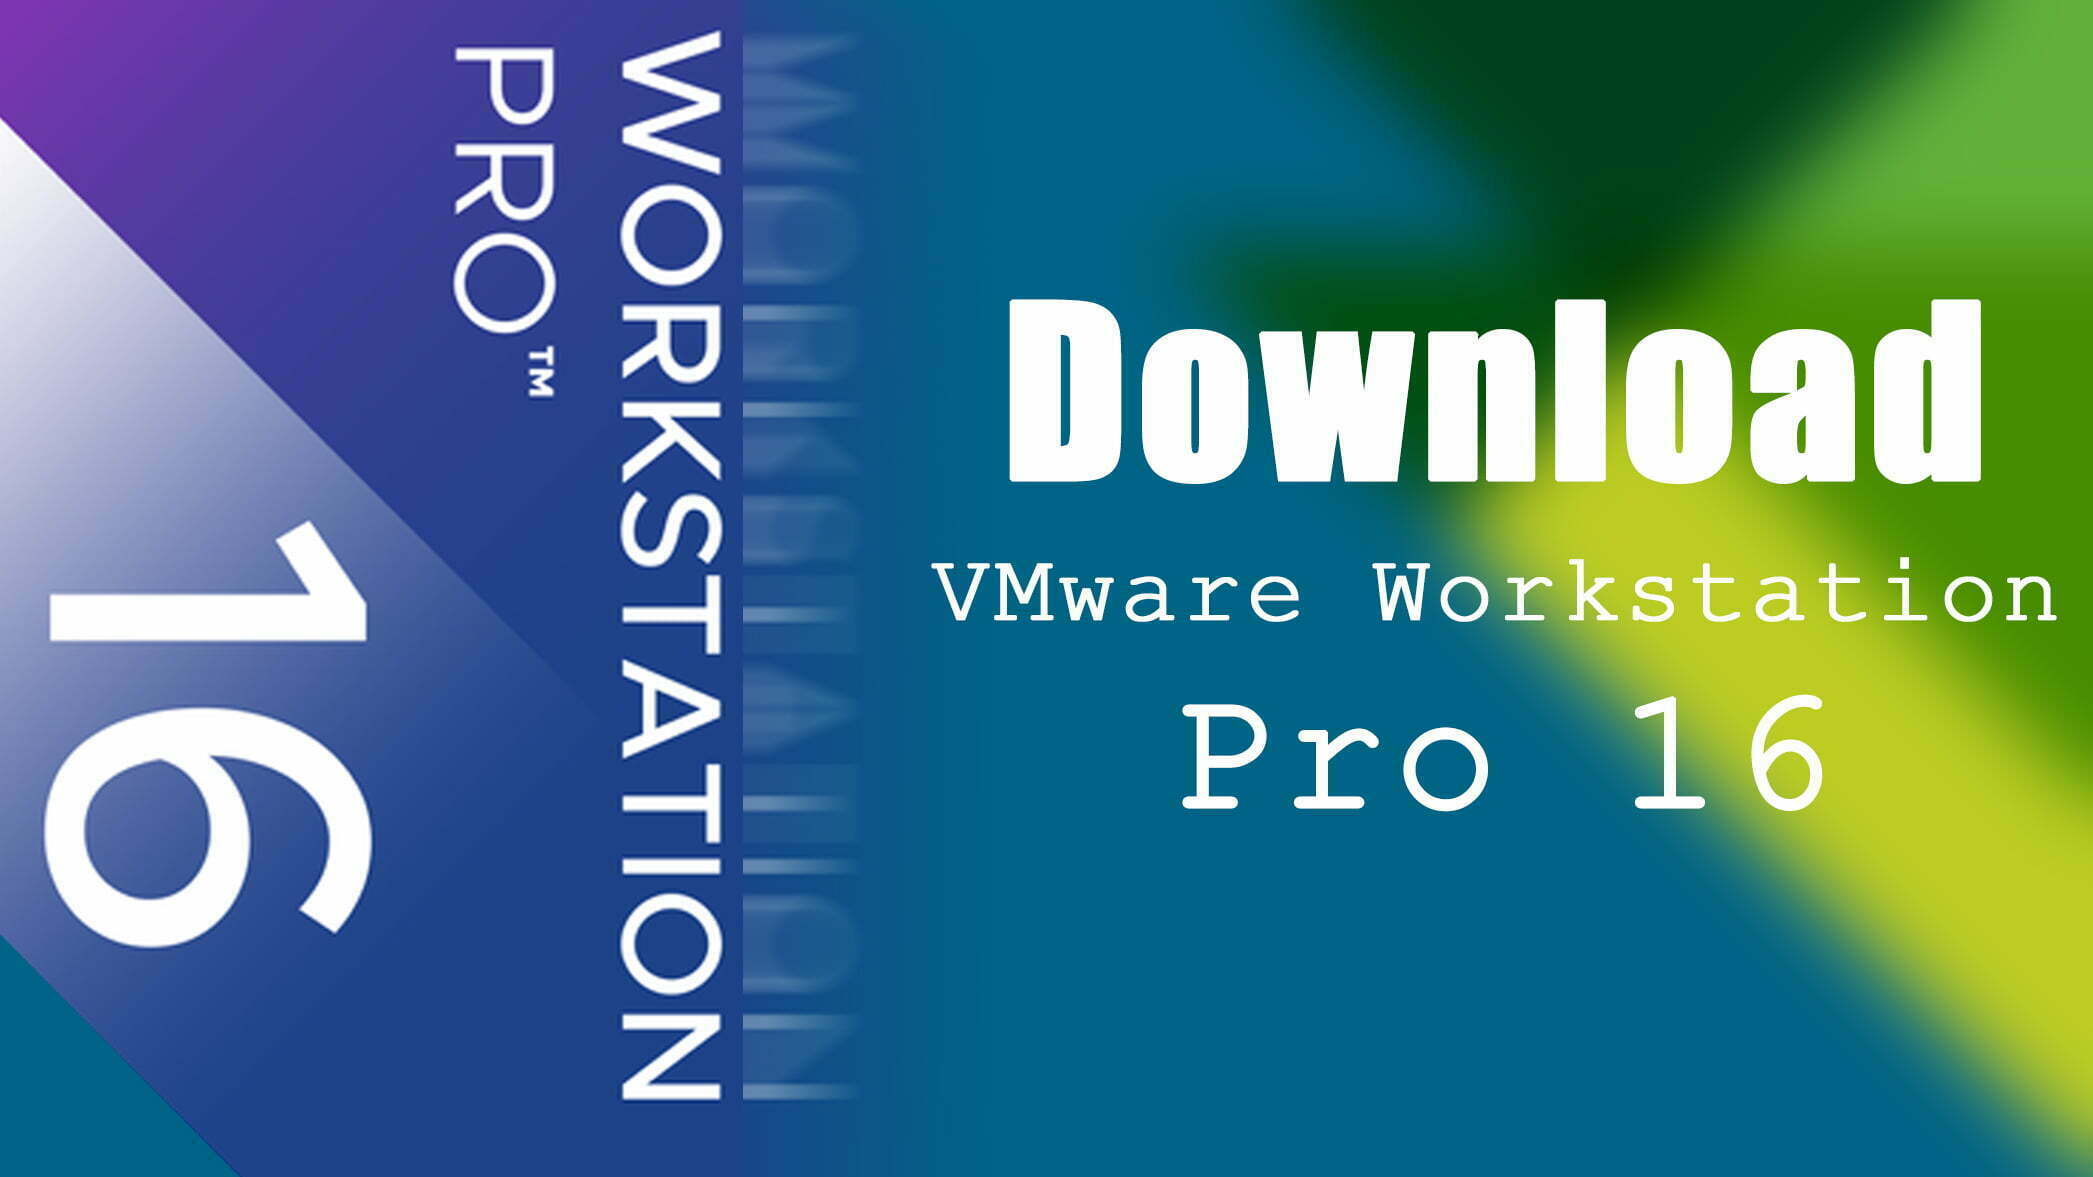 vmware workstation pro download old version